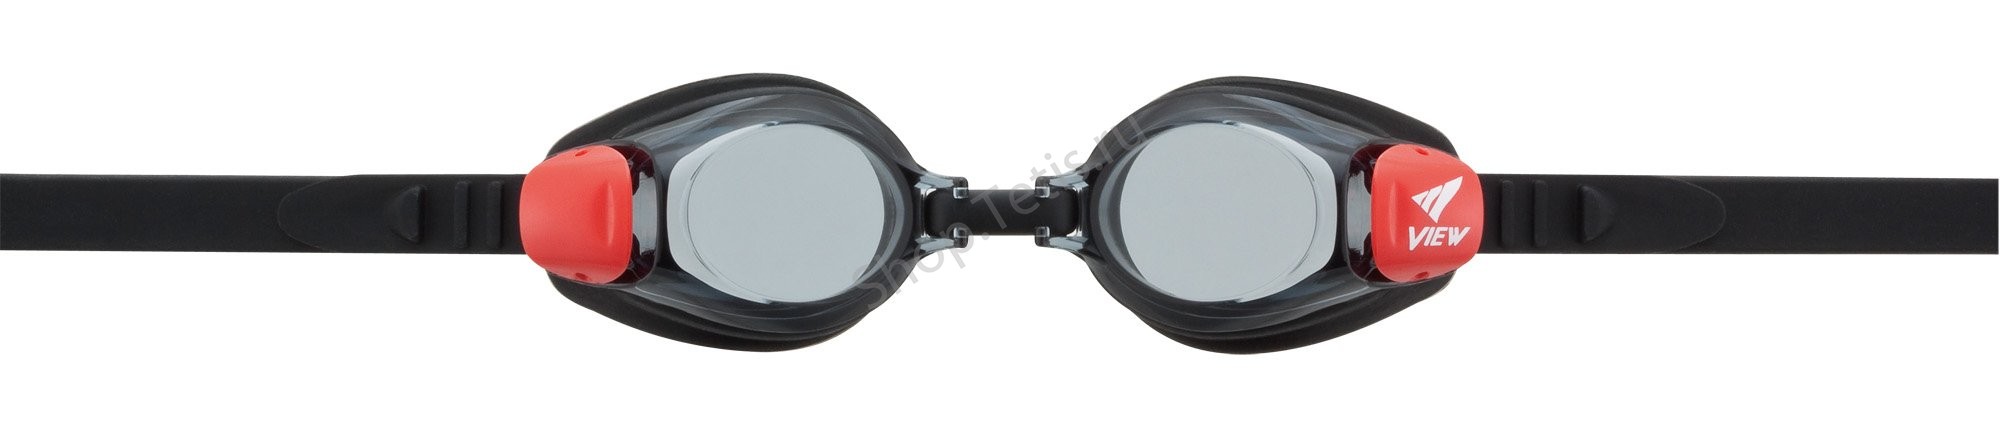 Очки для плавания детские VIEW SNAPPER JUNIOR